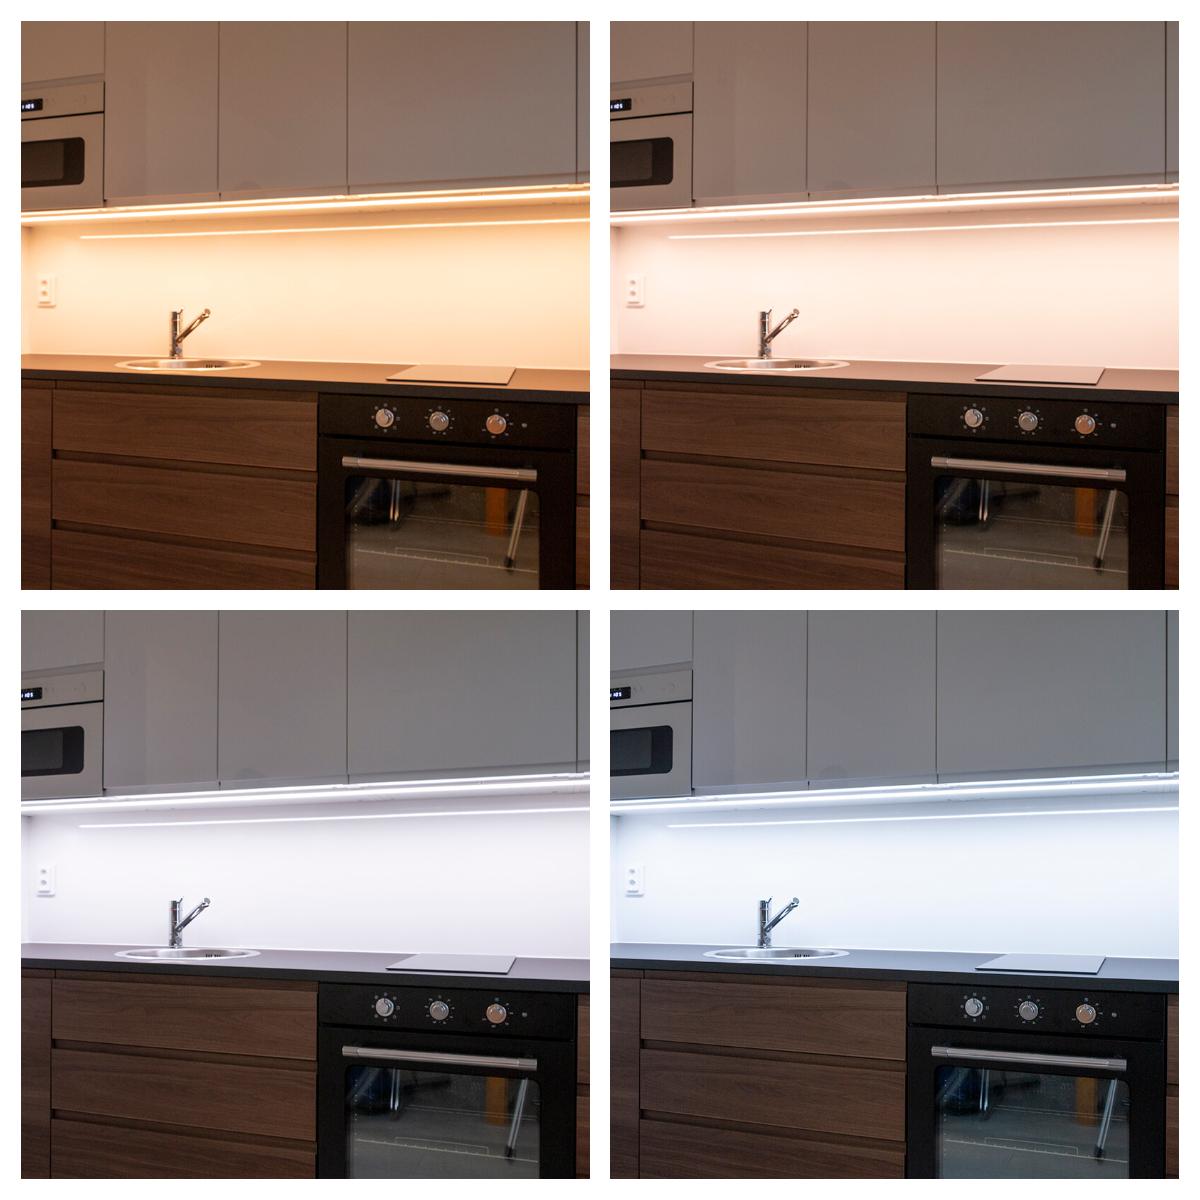 Neljä esimerkkiä valon värilämpötilan vaihtamisen vaikutuksesta keittiön tunnelmaan ja ilmeeseen.